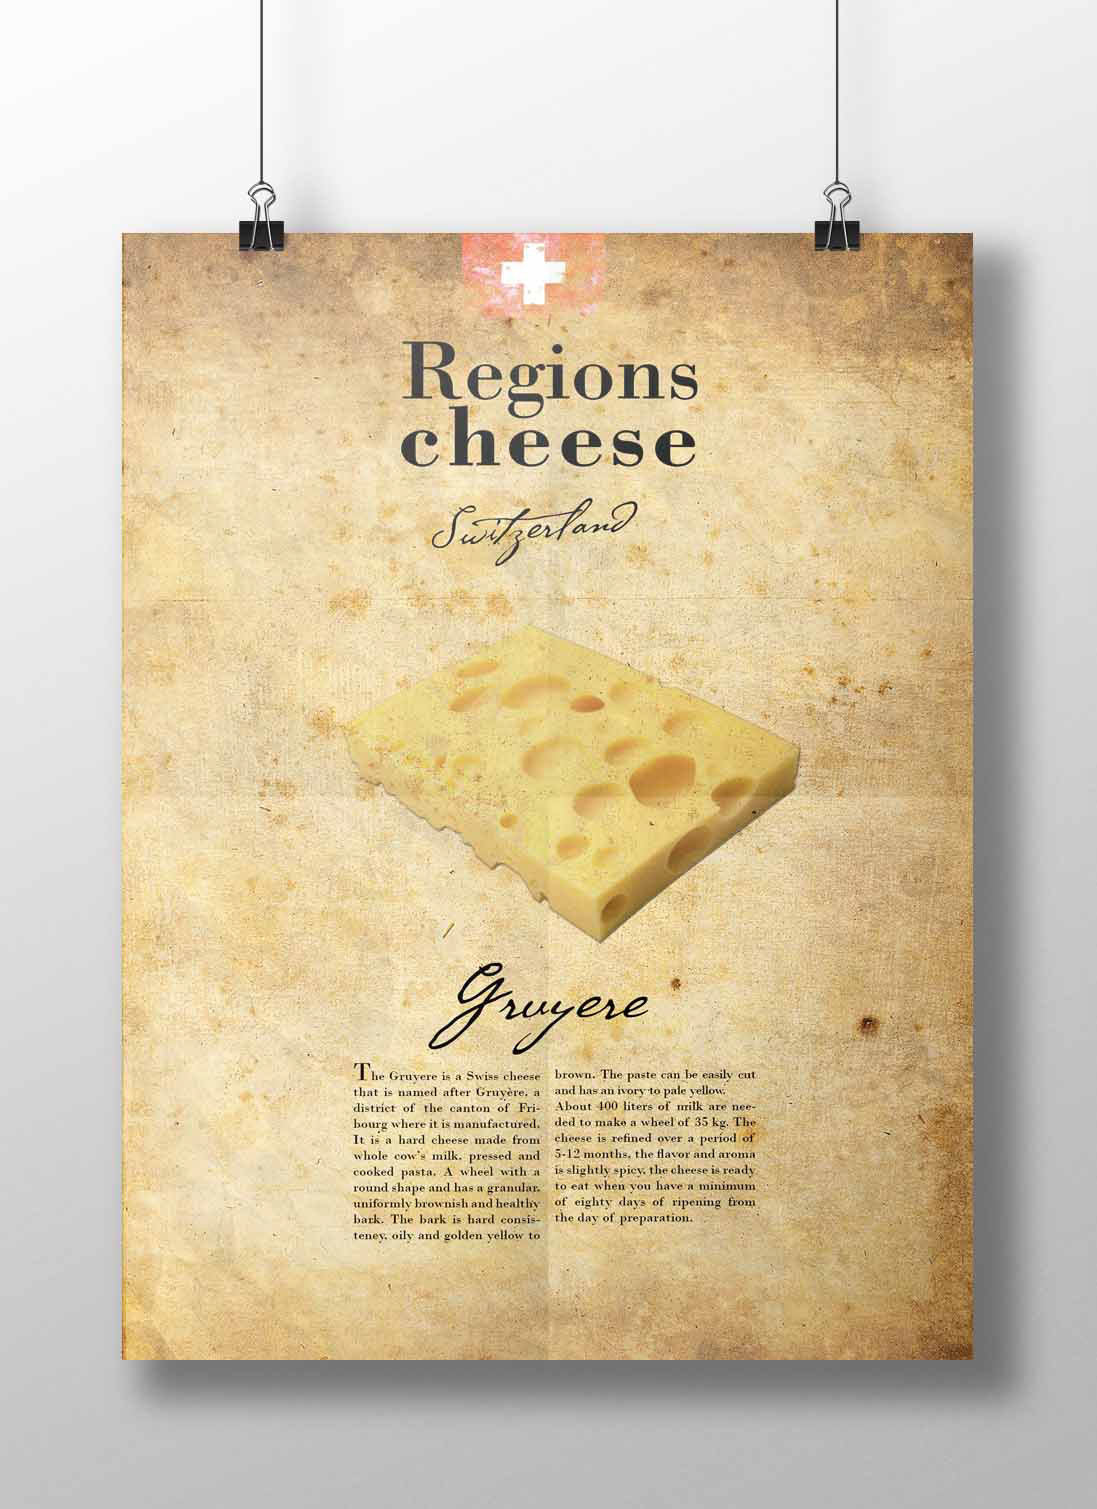 Reino Unido italia francia suiza cheddar roquefort chesse queso vendimia Regions